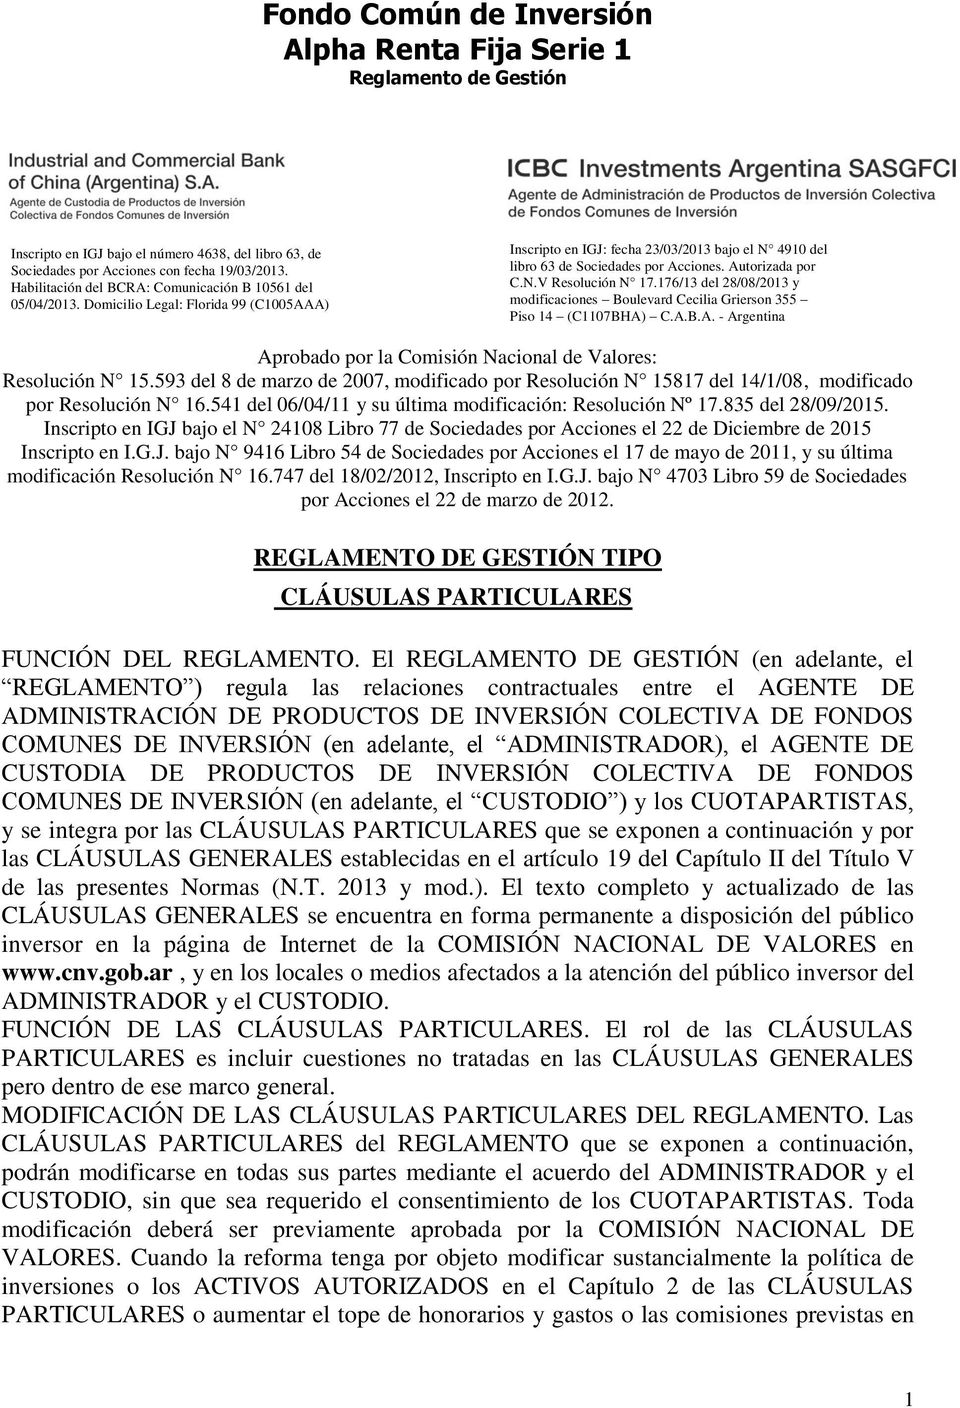 Autorizada por C.N.V Resolución N 17.176/13 del 28/08/2013 y modificaciones Boulevard Cecilia Grierson 355 Piso 14 (C1107BHA) C.A.B.A. - Argentina Aprobado por la Comisión Nacional de Valores: Resolución N 15.